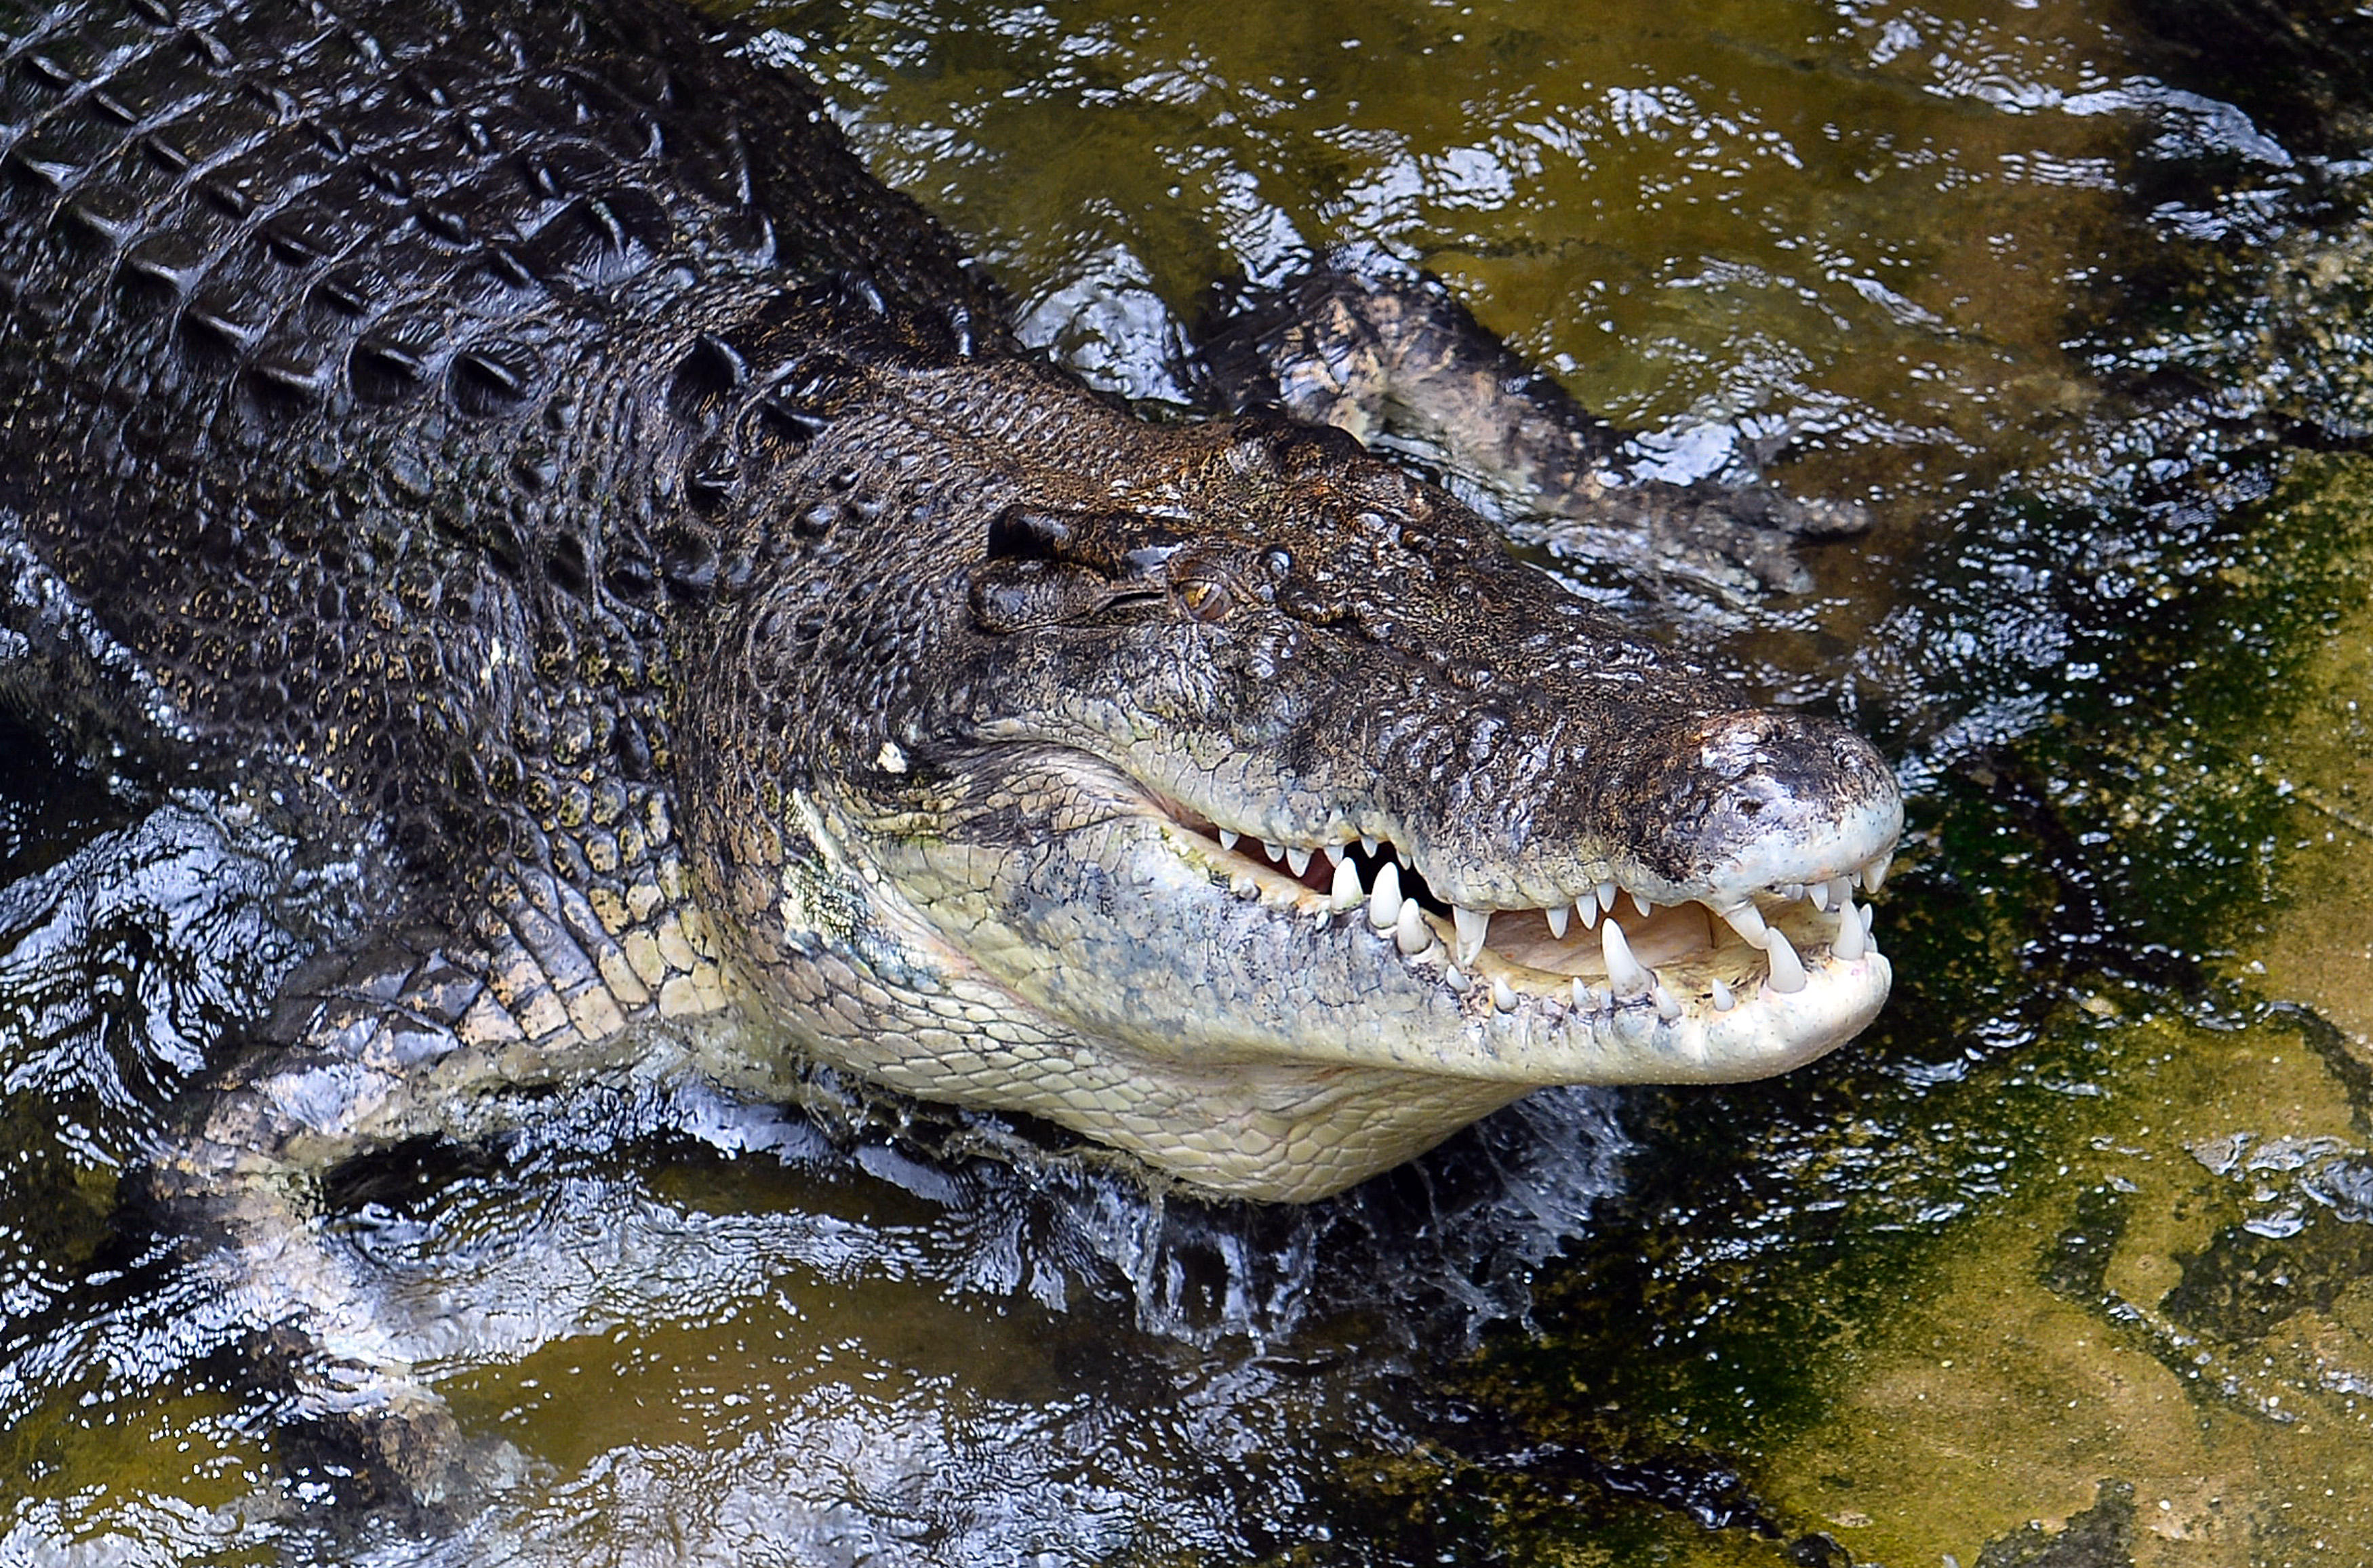 where do you find crocodiles in australia